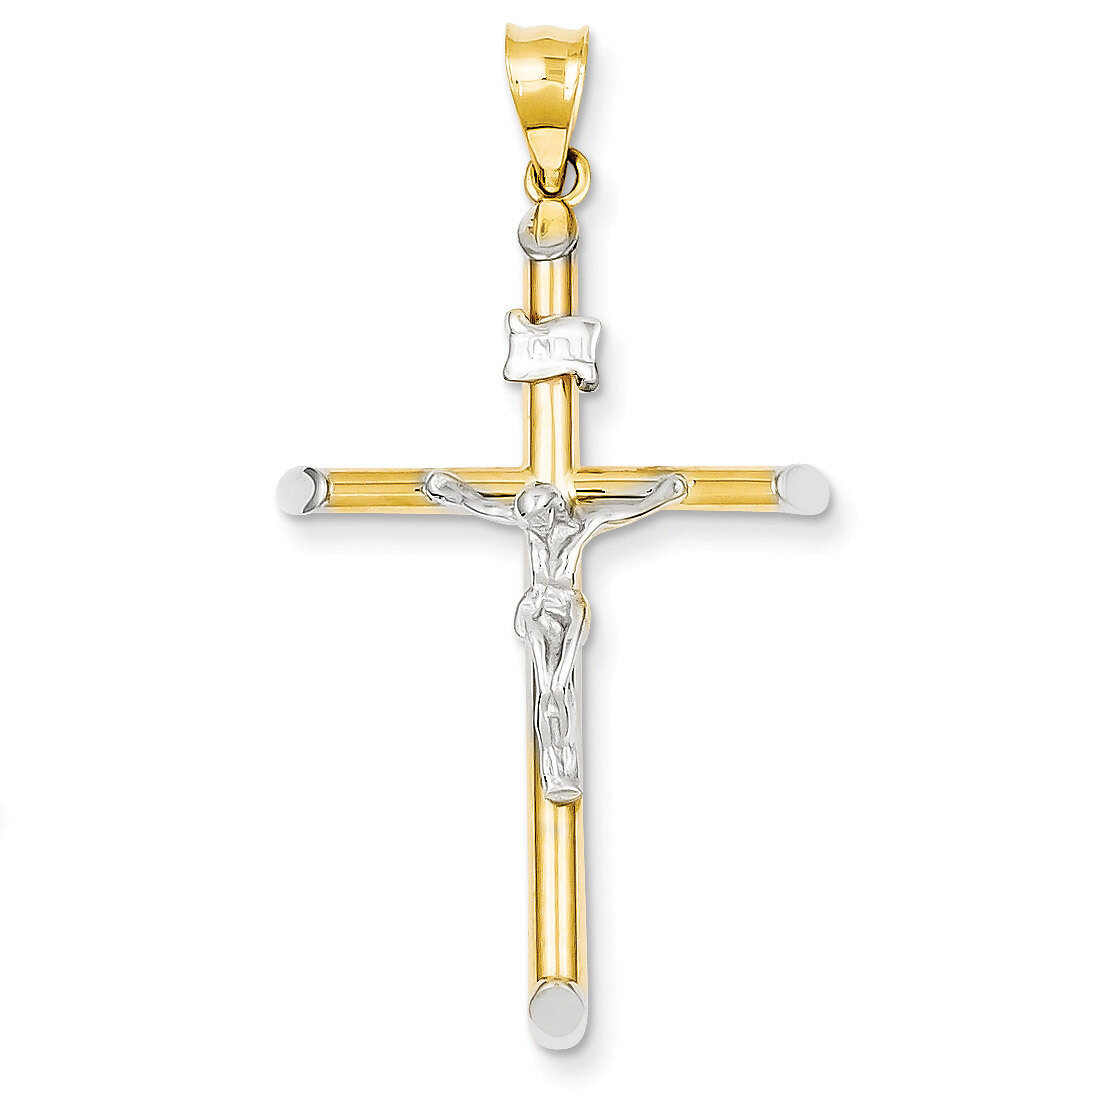 INRI Crucifix Pendant 14k Two-Tone Gold K3721